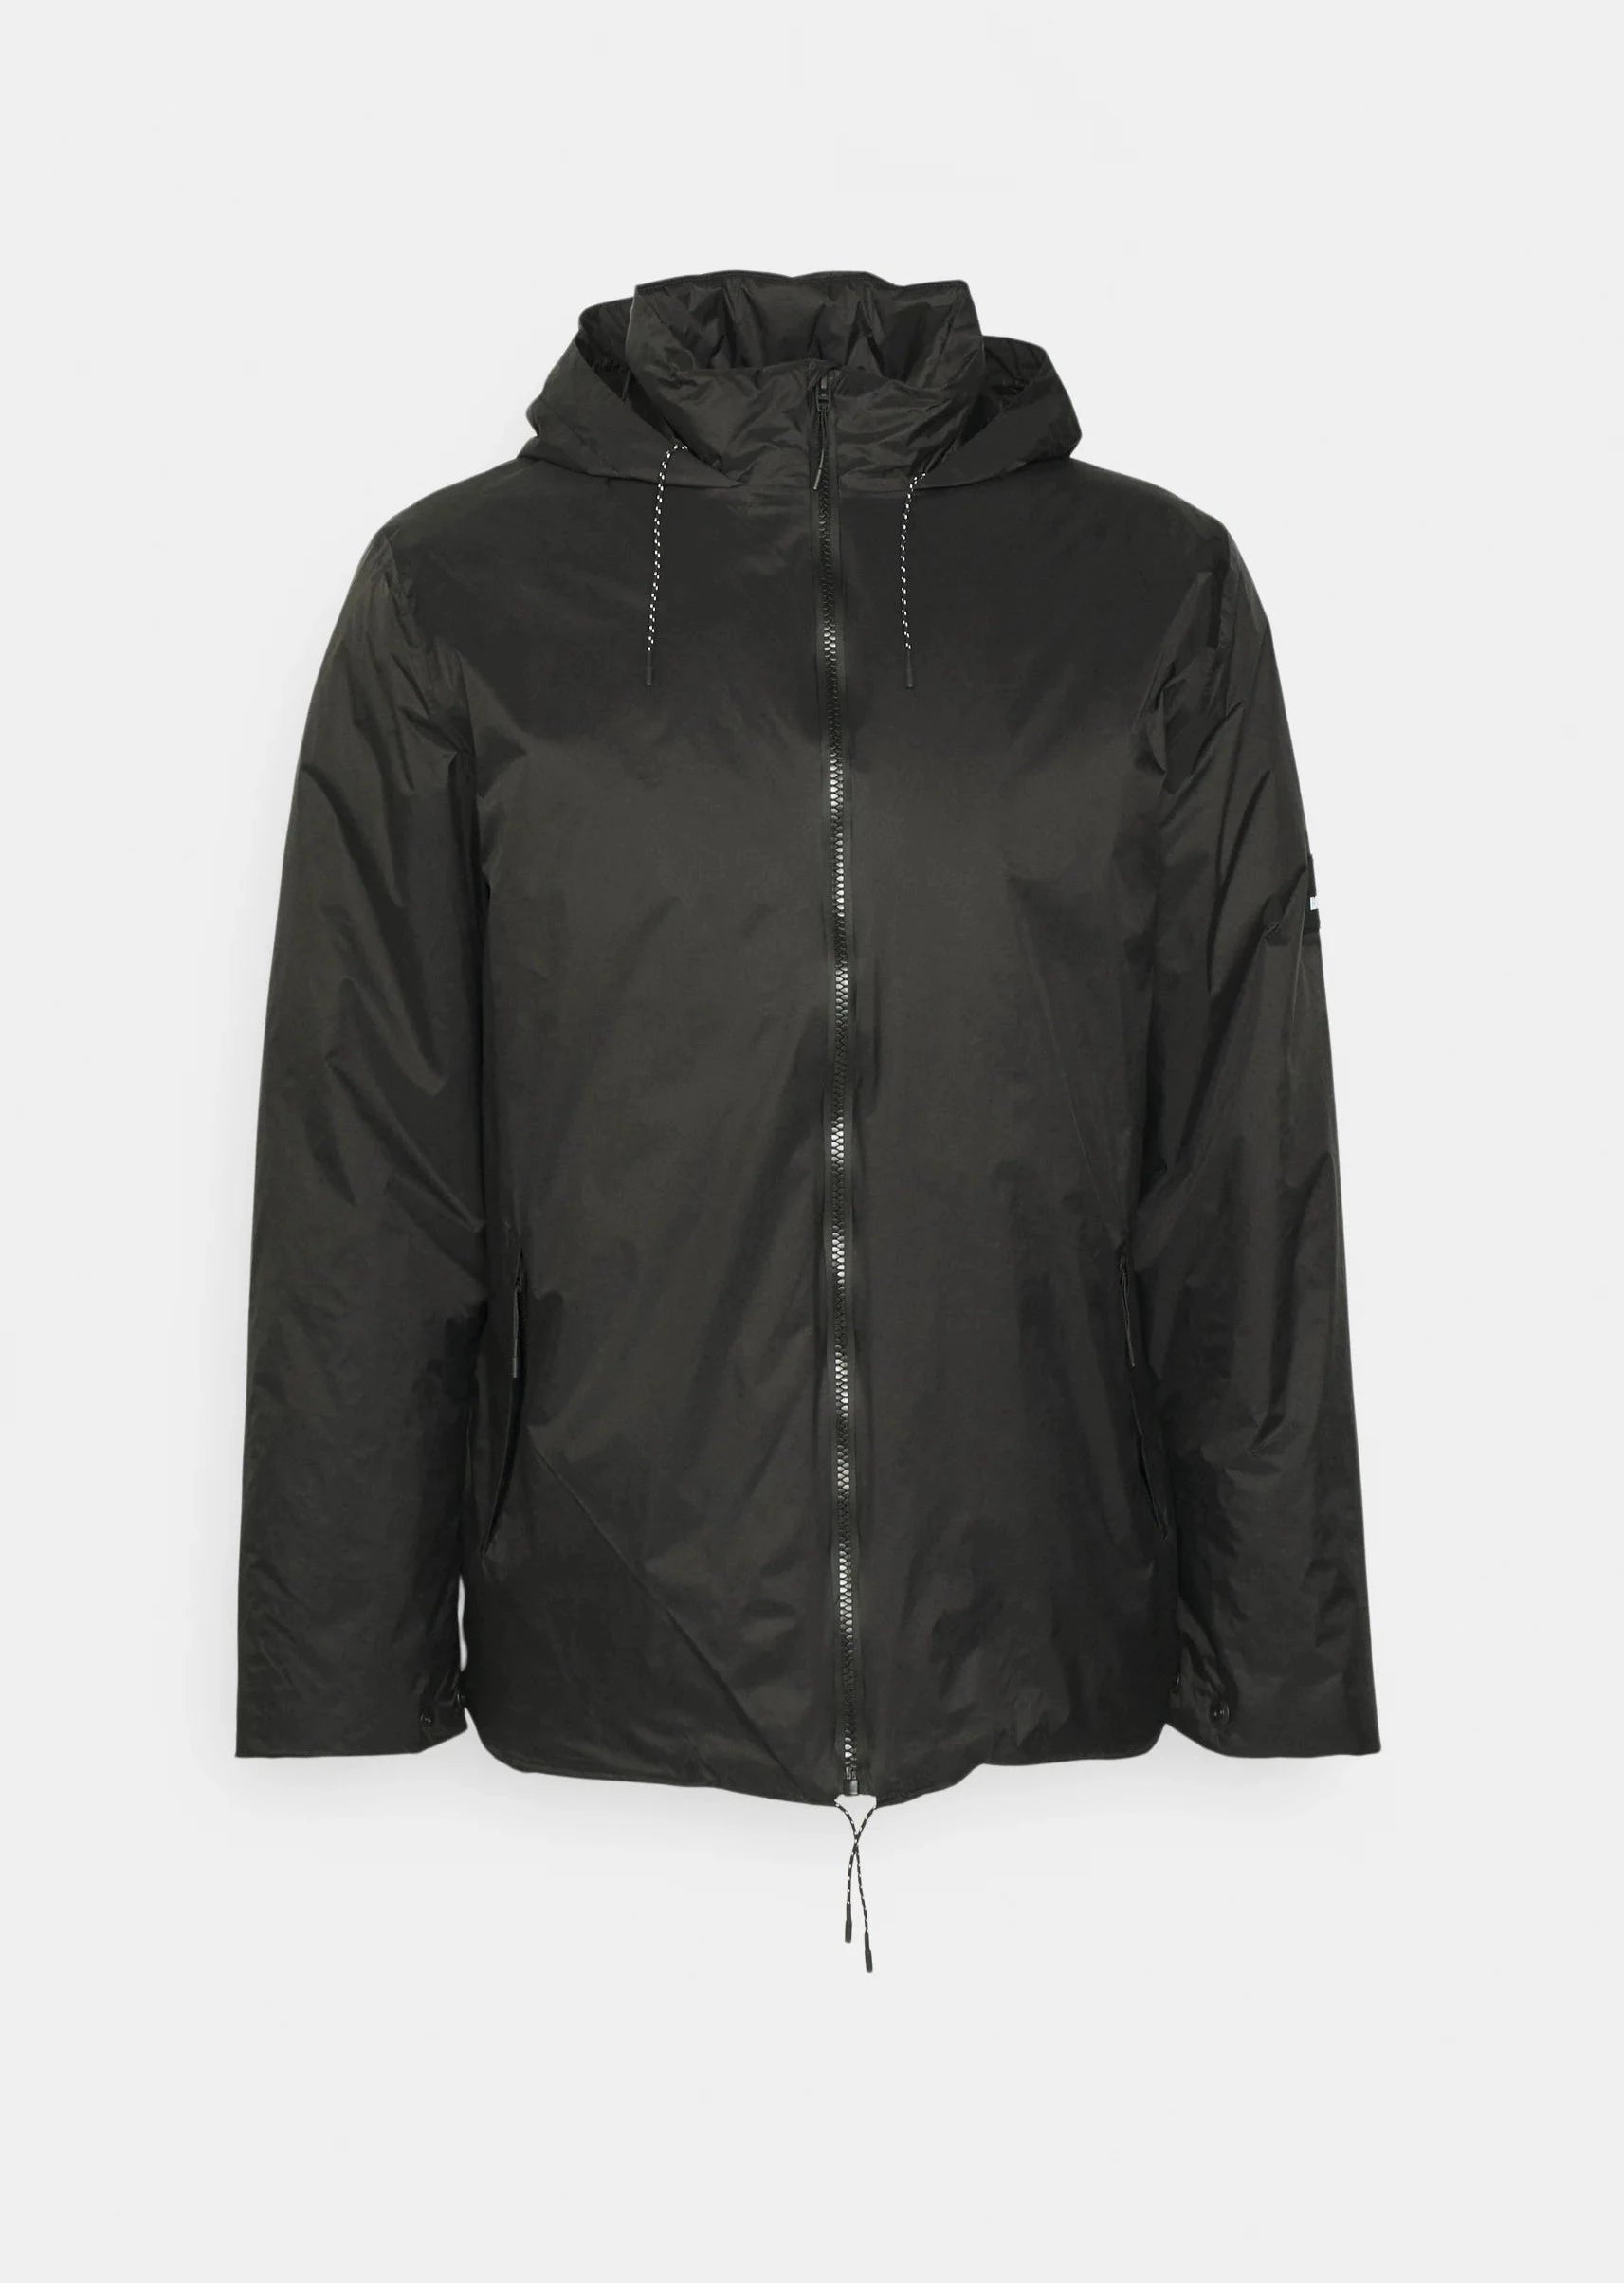 Rains Veste/Blouson Black / S Imperméable Rains - Fuse jacket